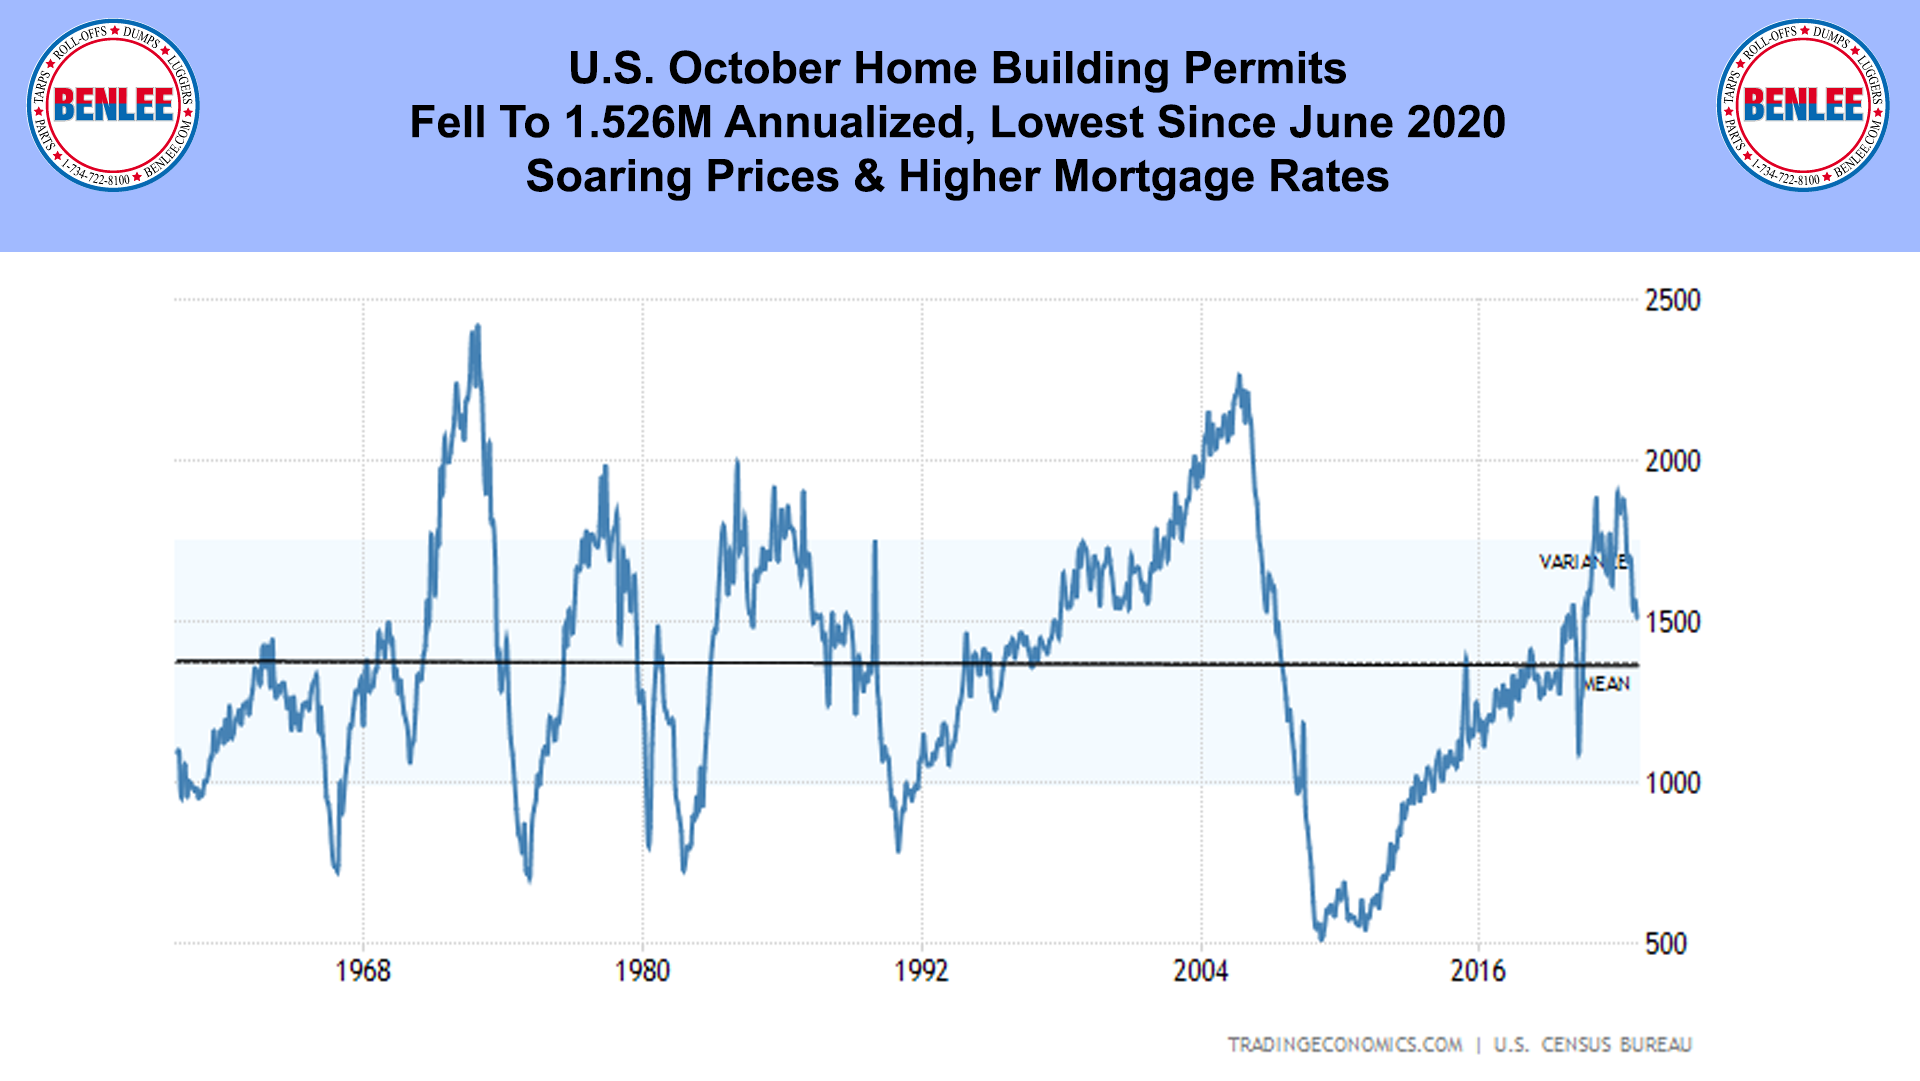 U.S. October Home Building Permits